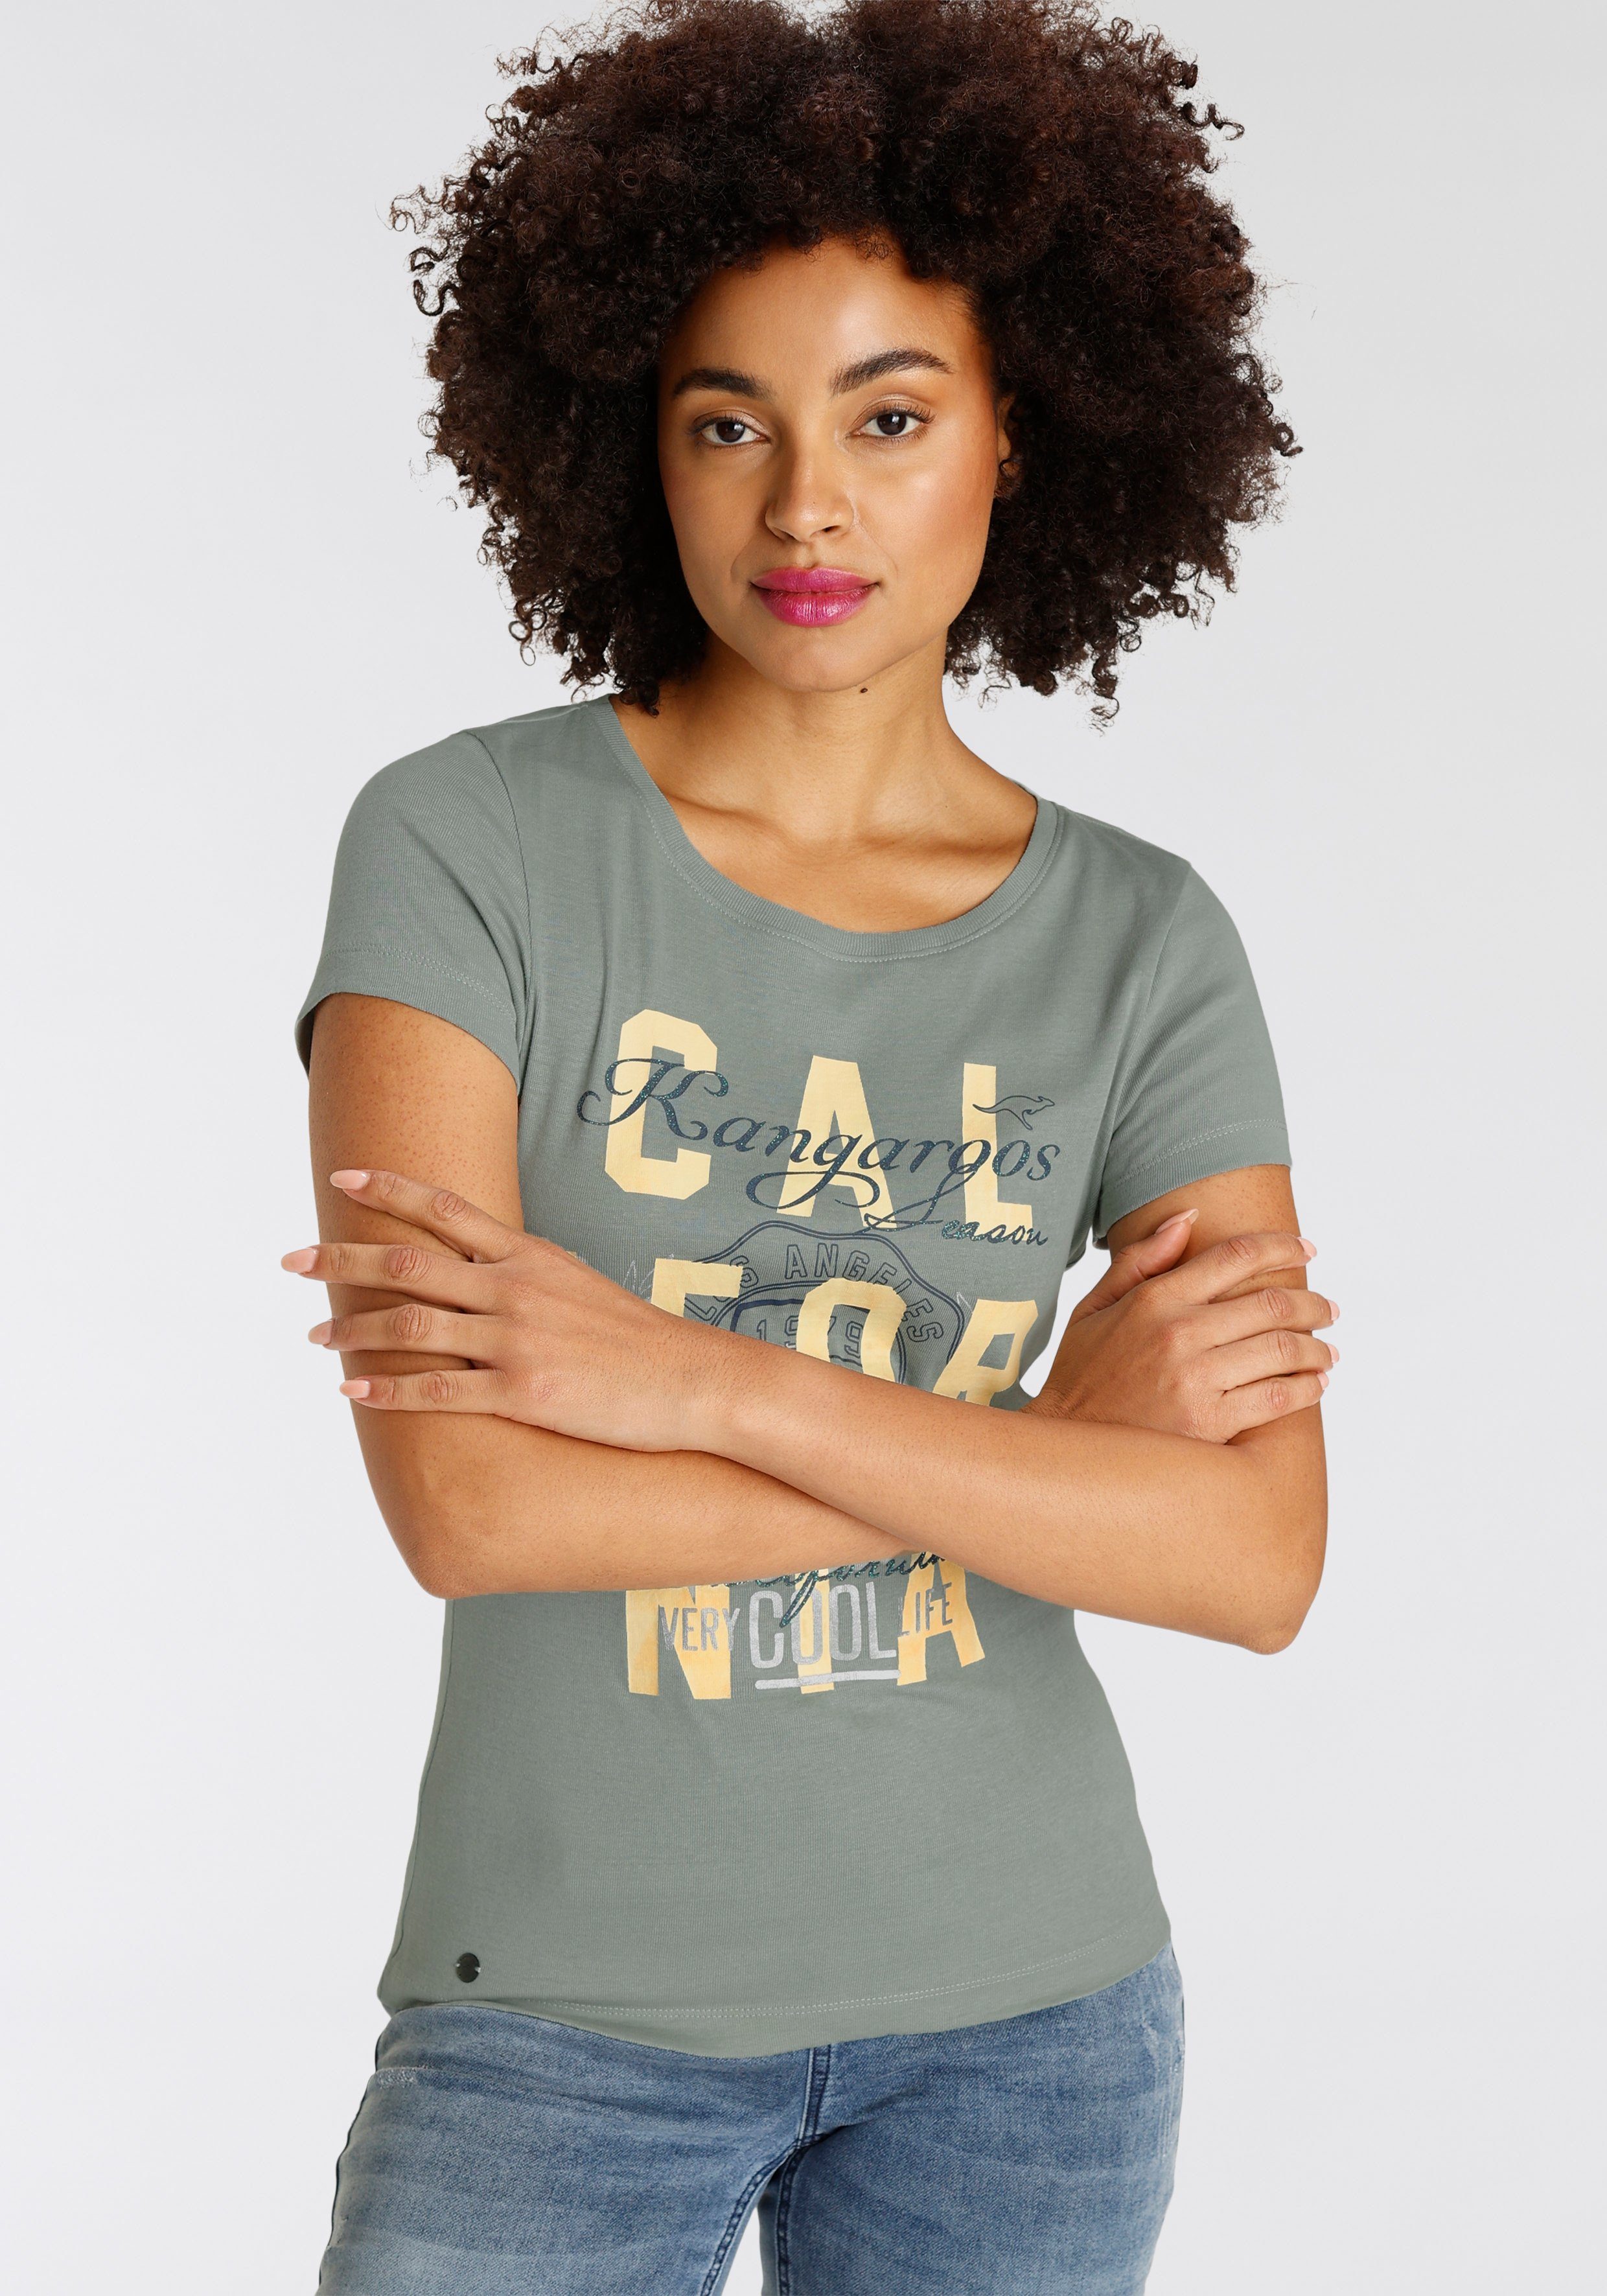 KangaROOS Print-Shirt mit KOLLEKTION im NEUE - Logodruck khakigrau California-Style